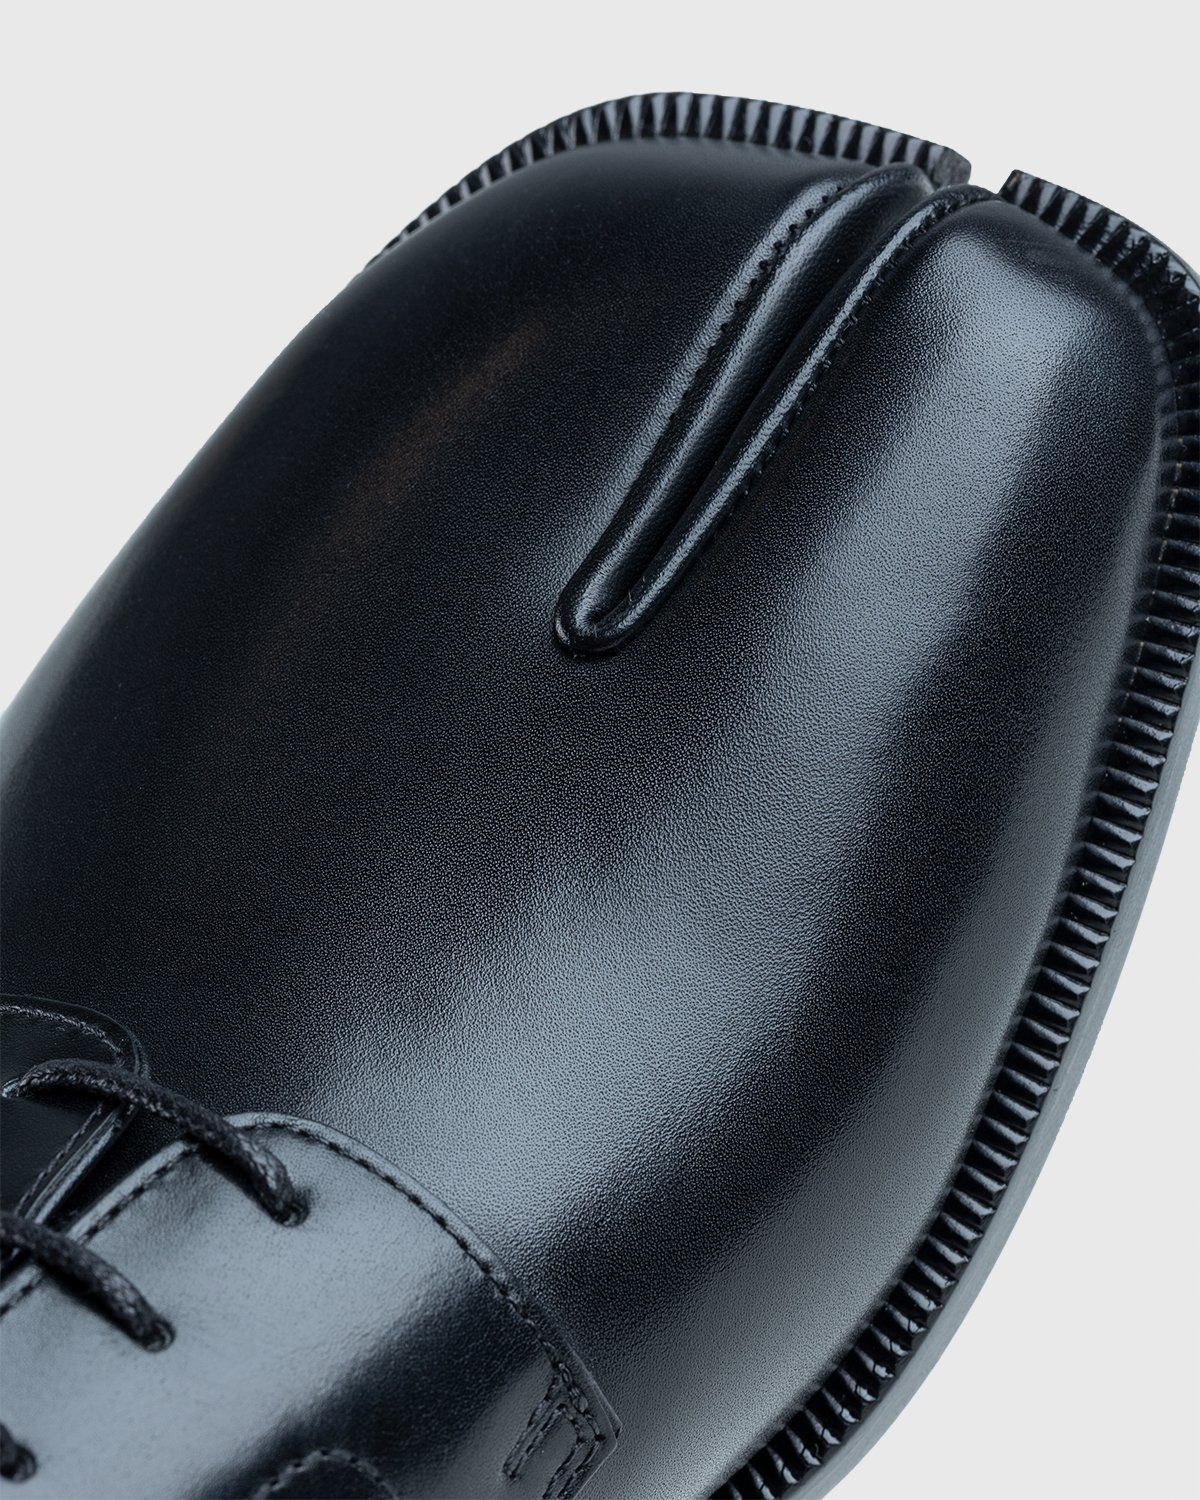 Maison Margiela – Tabi Lace-up Shoes Black - Shoes - Black - Image 5